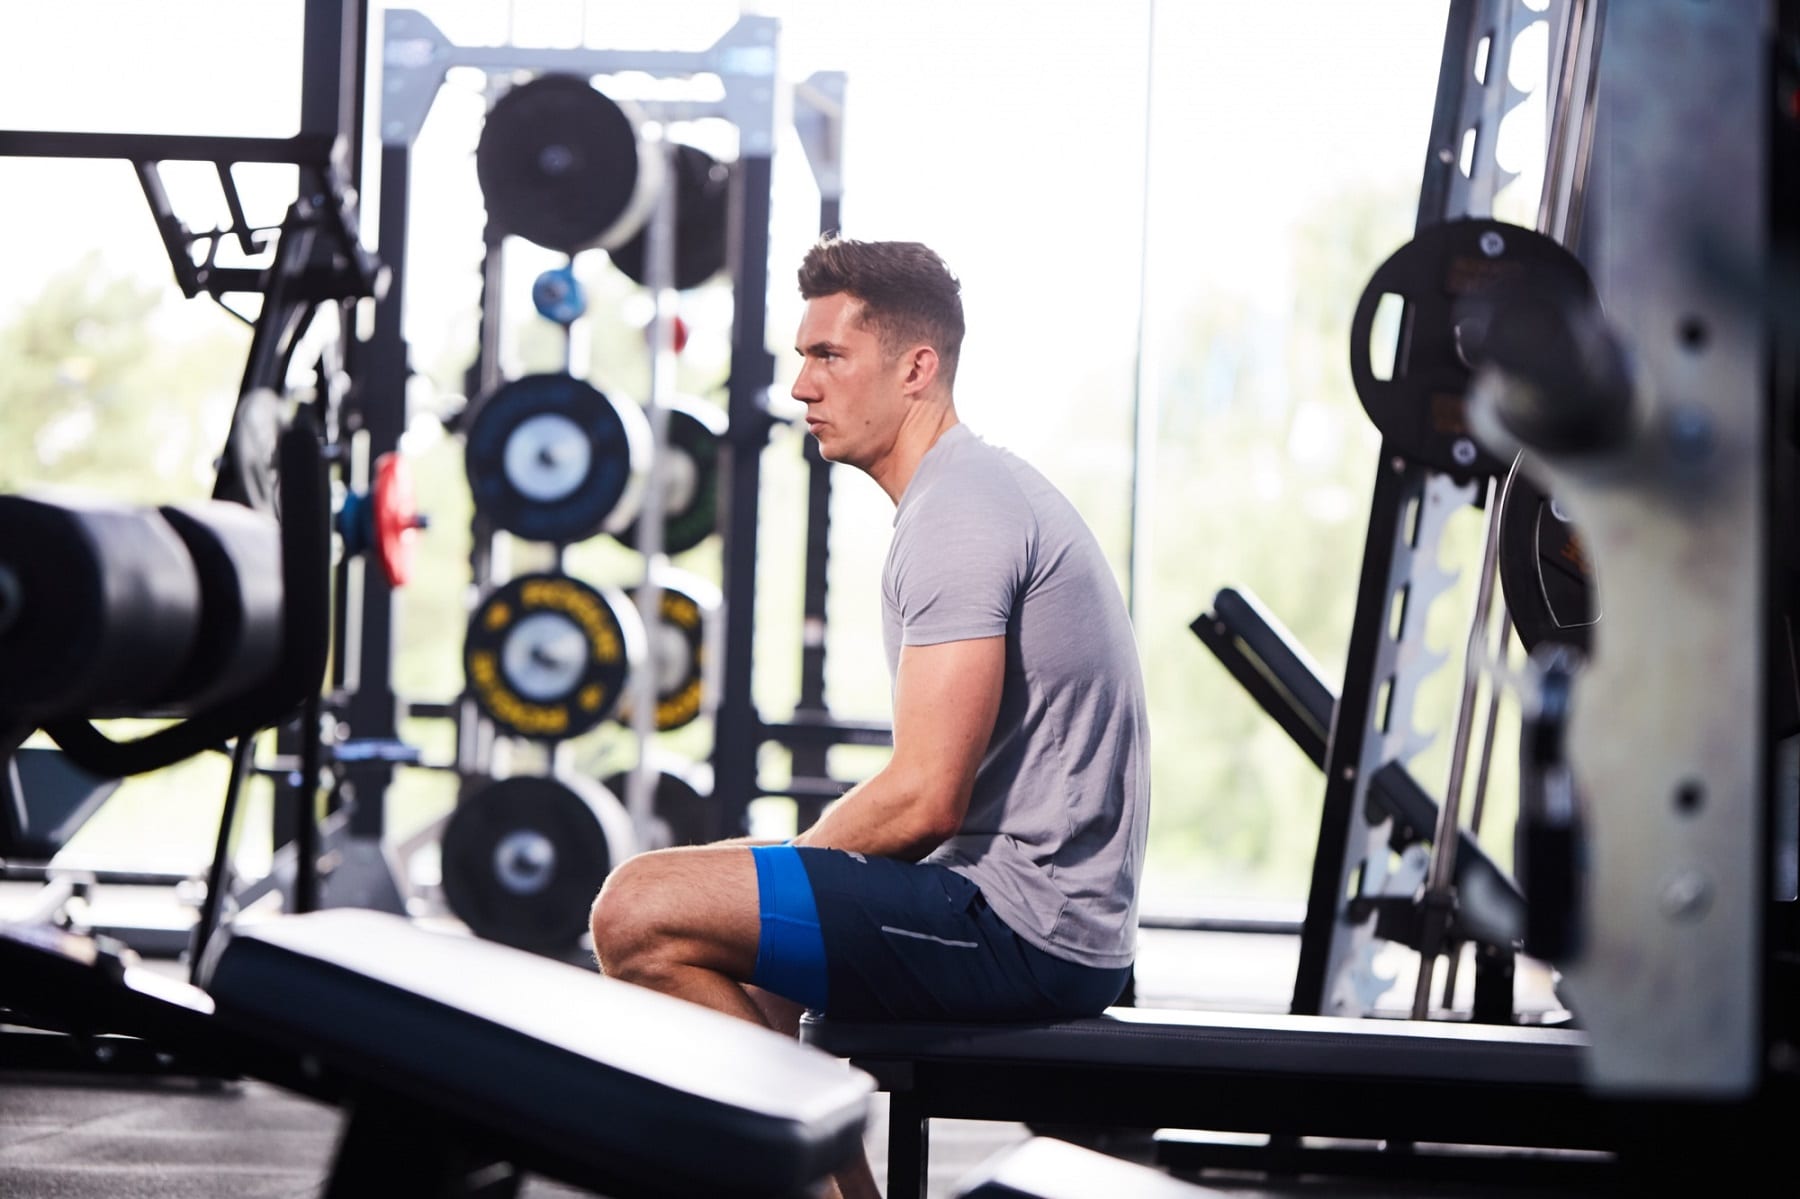 Full squat | Come si esegue? Muscoli coinvolti, errori comuni